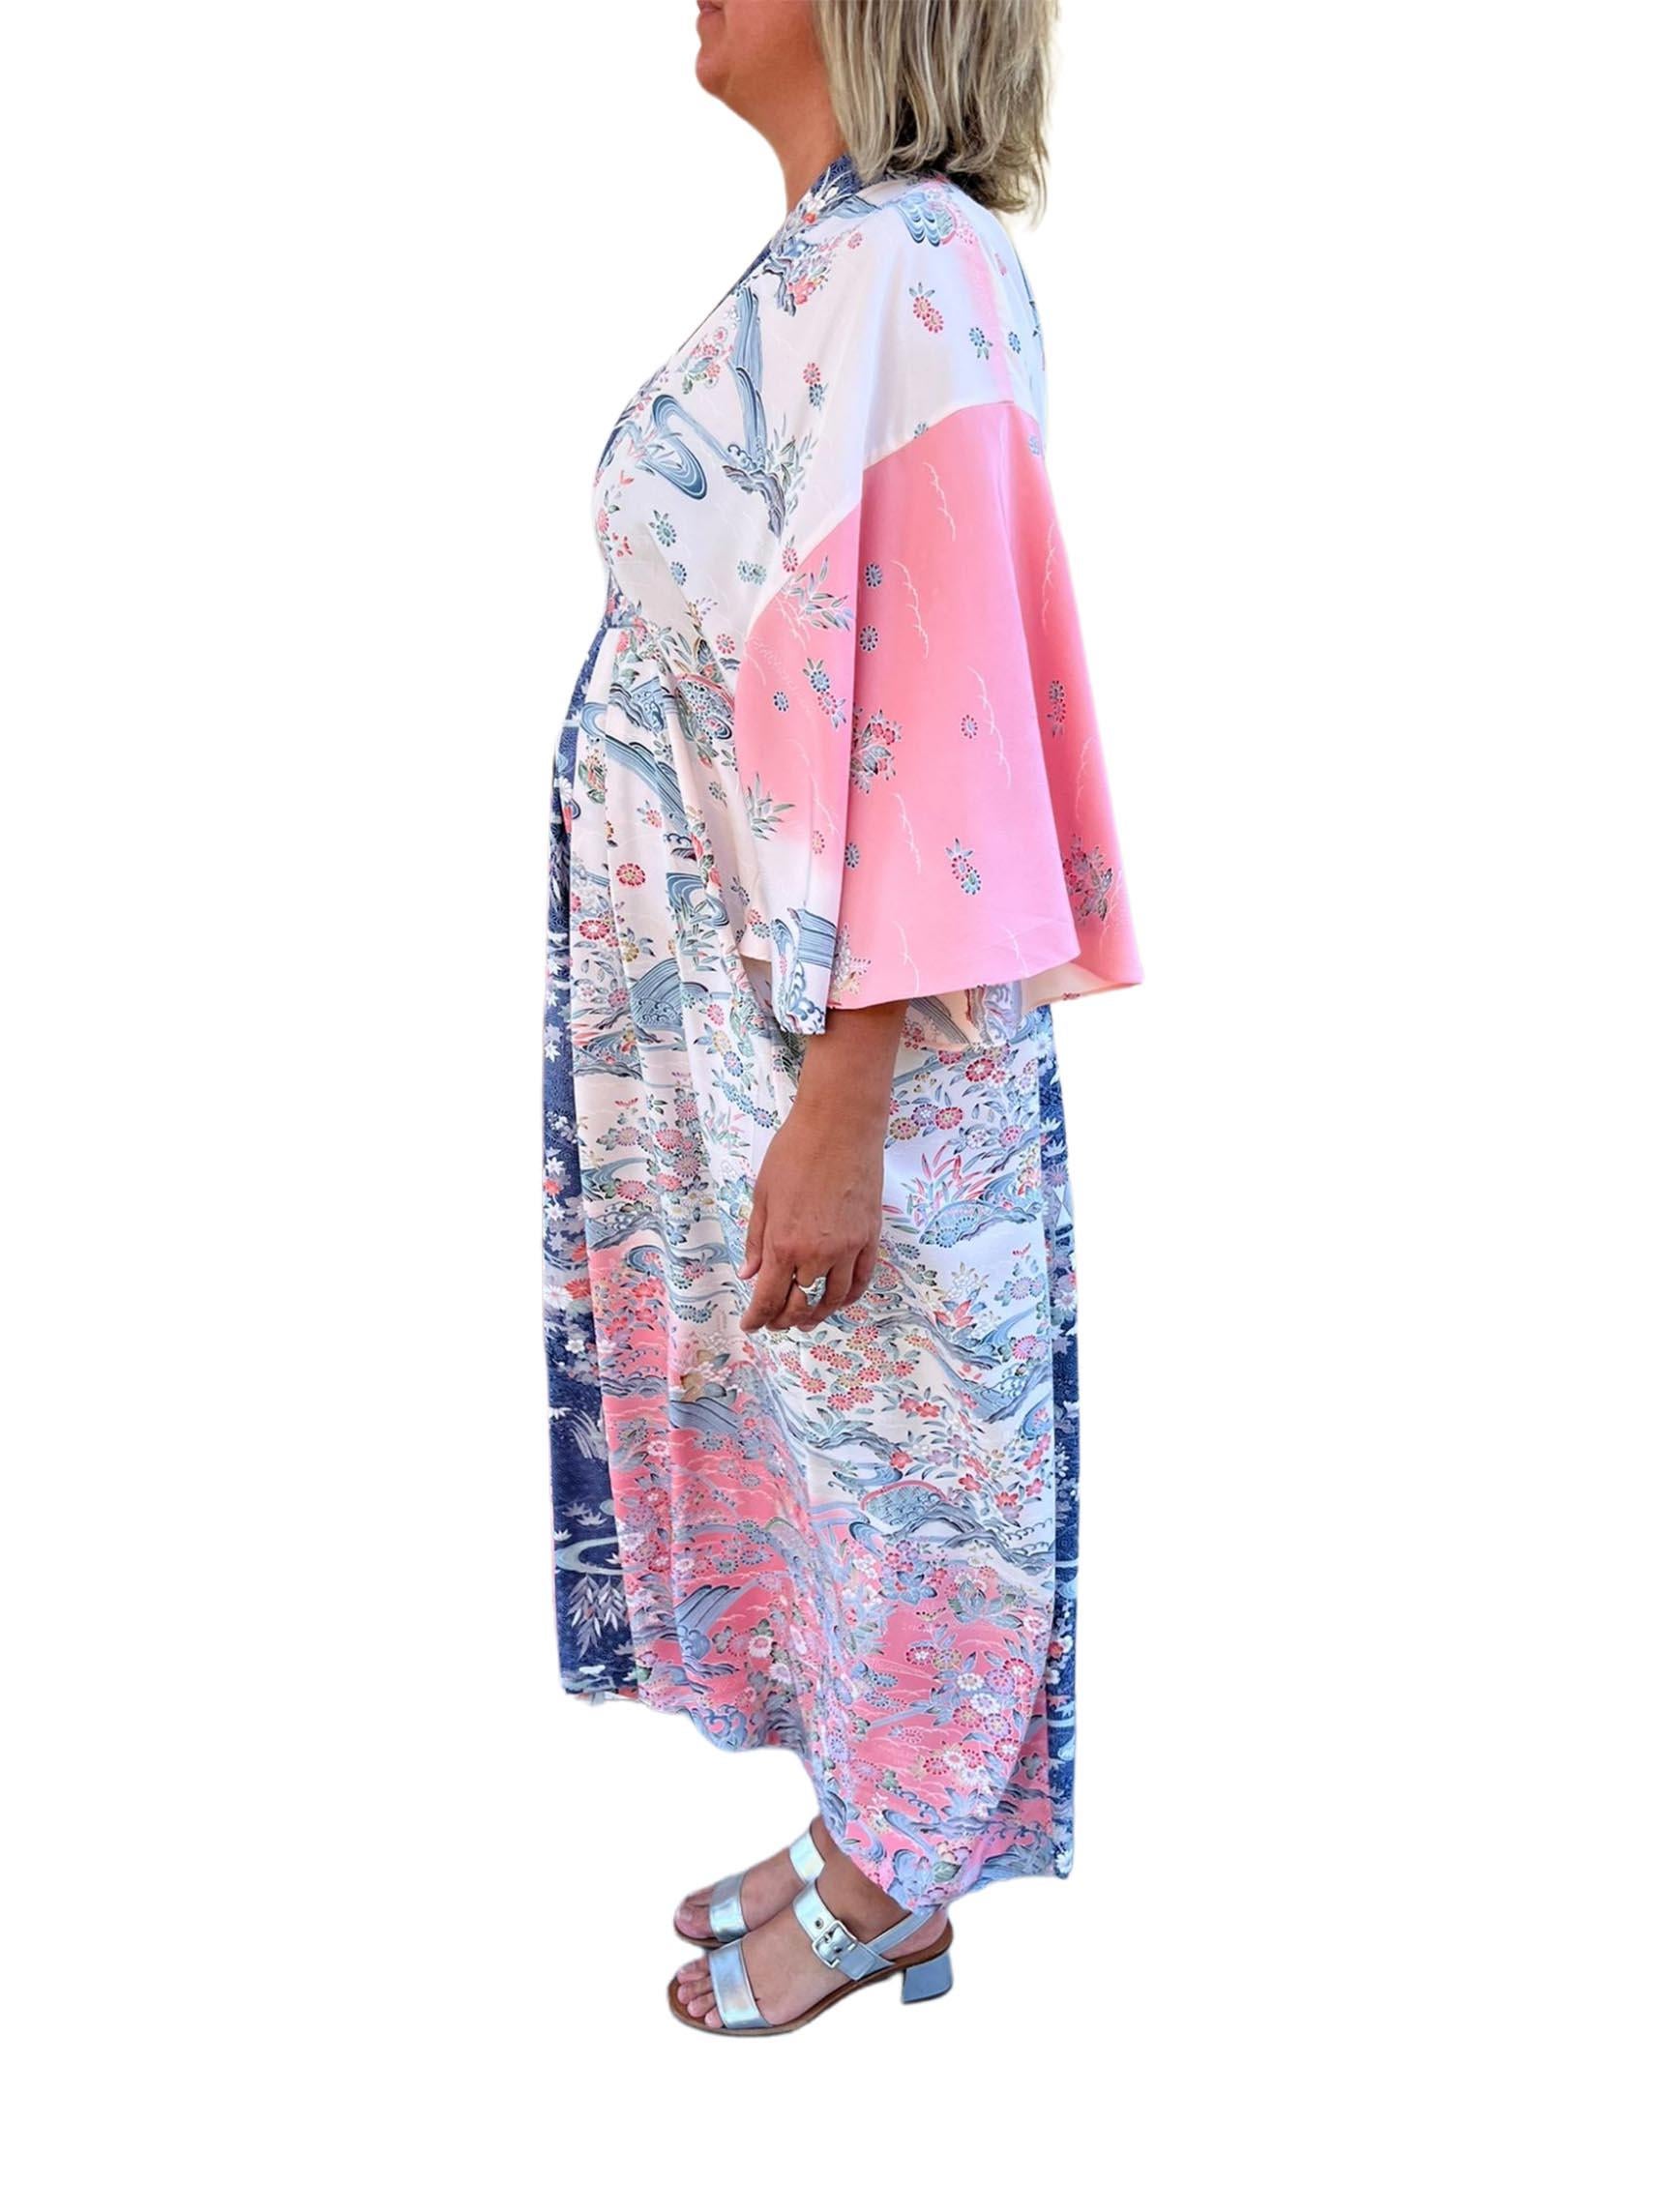 Chaque caftan de la collection Morphew est unique. En utilisant notre modèle classique de caftan ajusté/non ajusté, nous recyclons des soies de kimono vintage des années 1940 à 1980. Beaucoup sont imprimés ou teints à la main et certains ont même